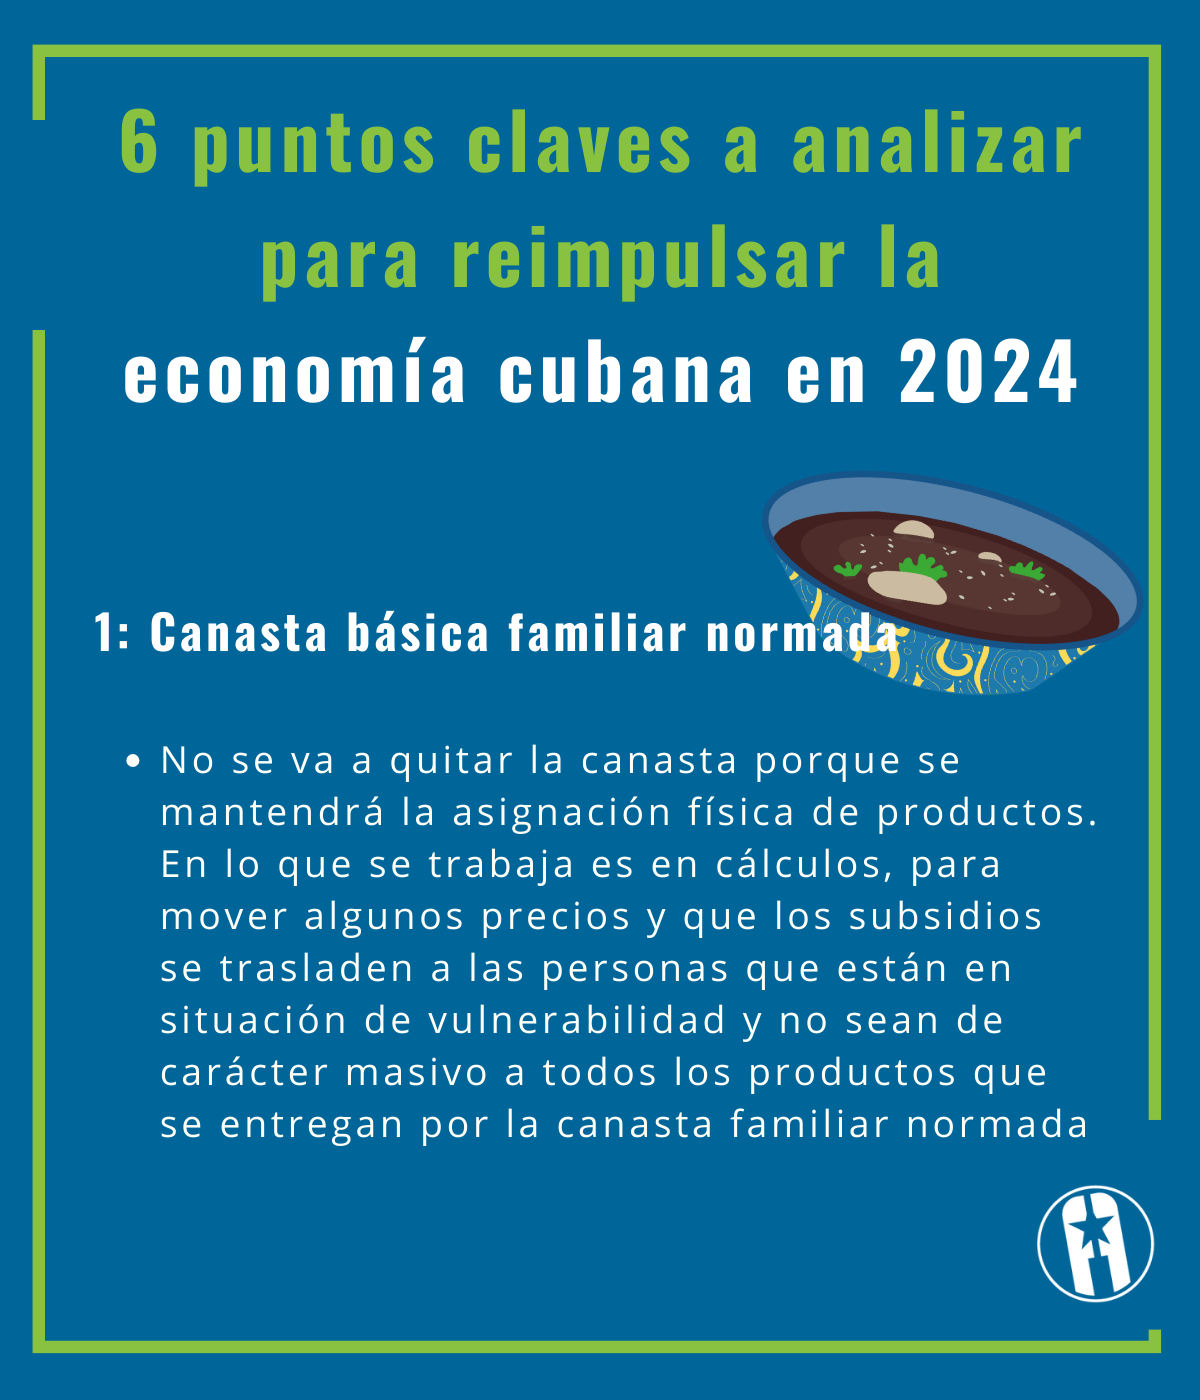 6 puntos claves a analizar para reimpulsar la economía cubana en 2024